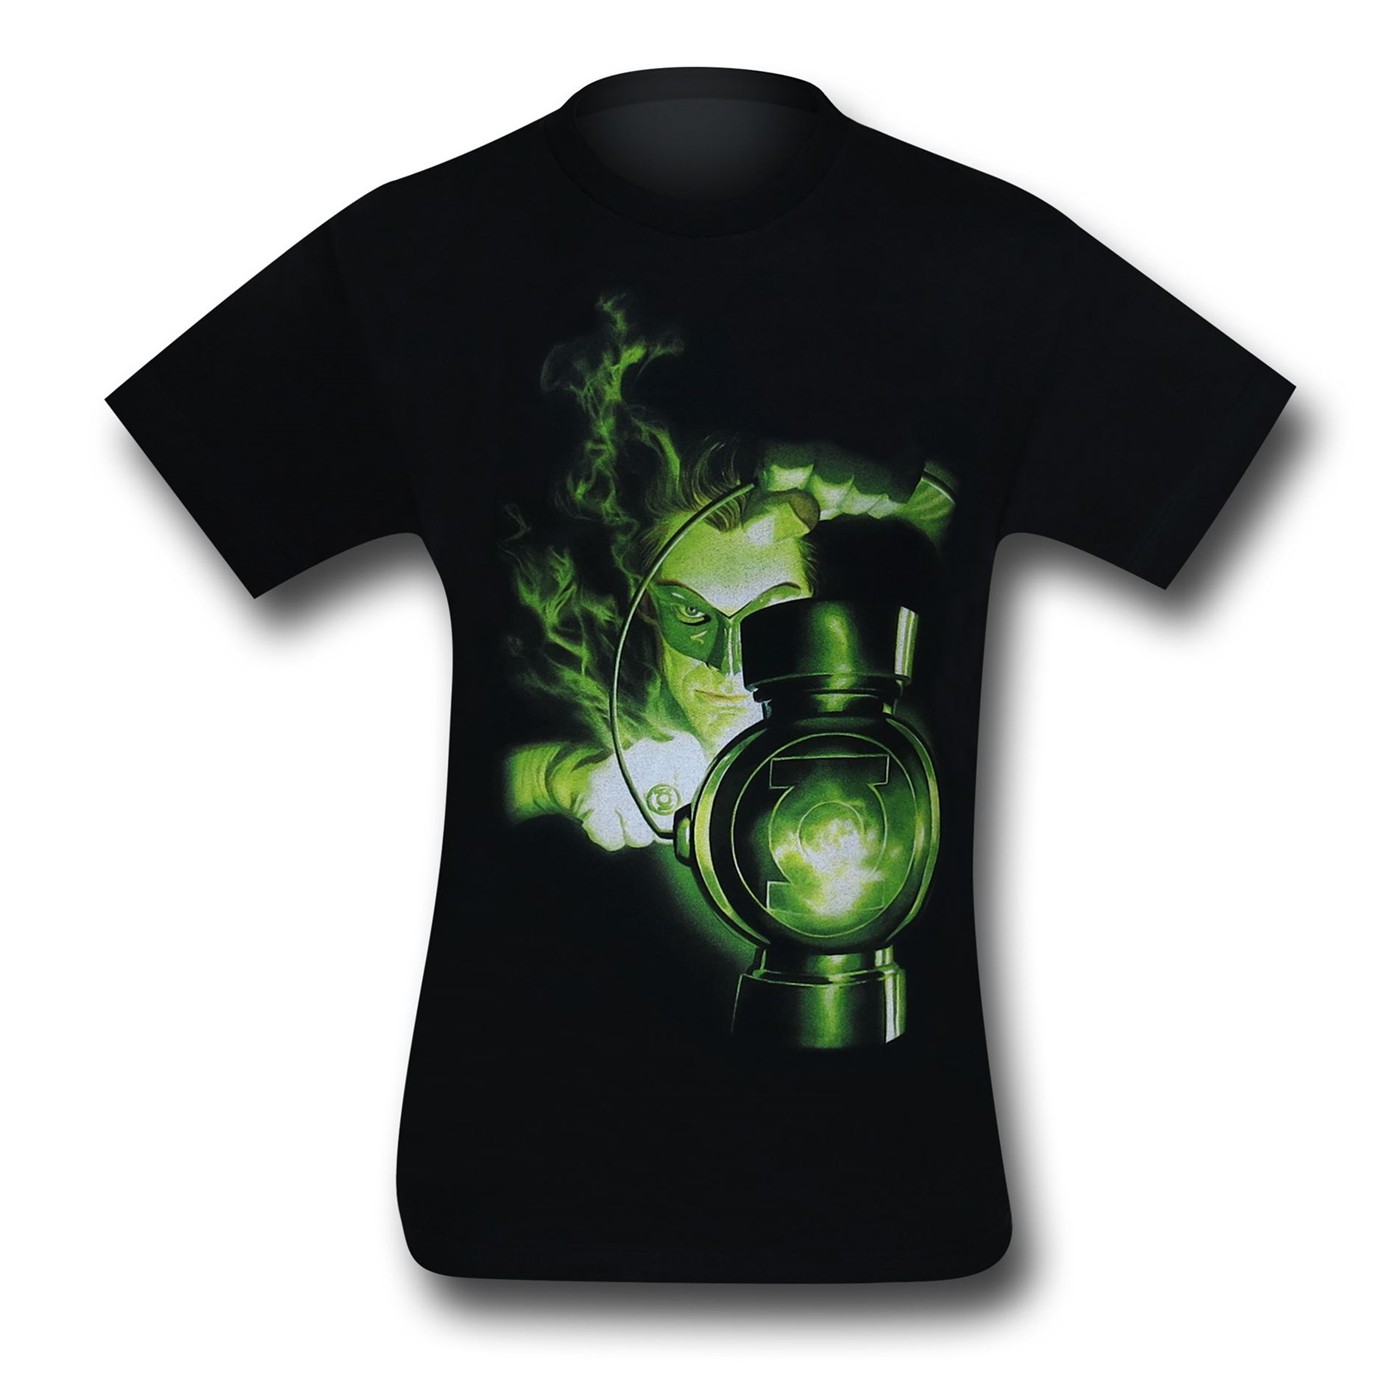 Green Lantern Charging Ring T-Shirt